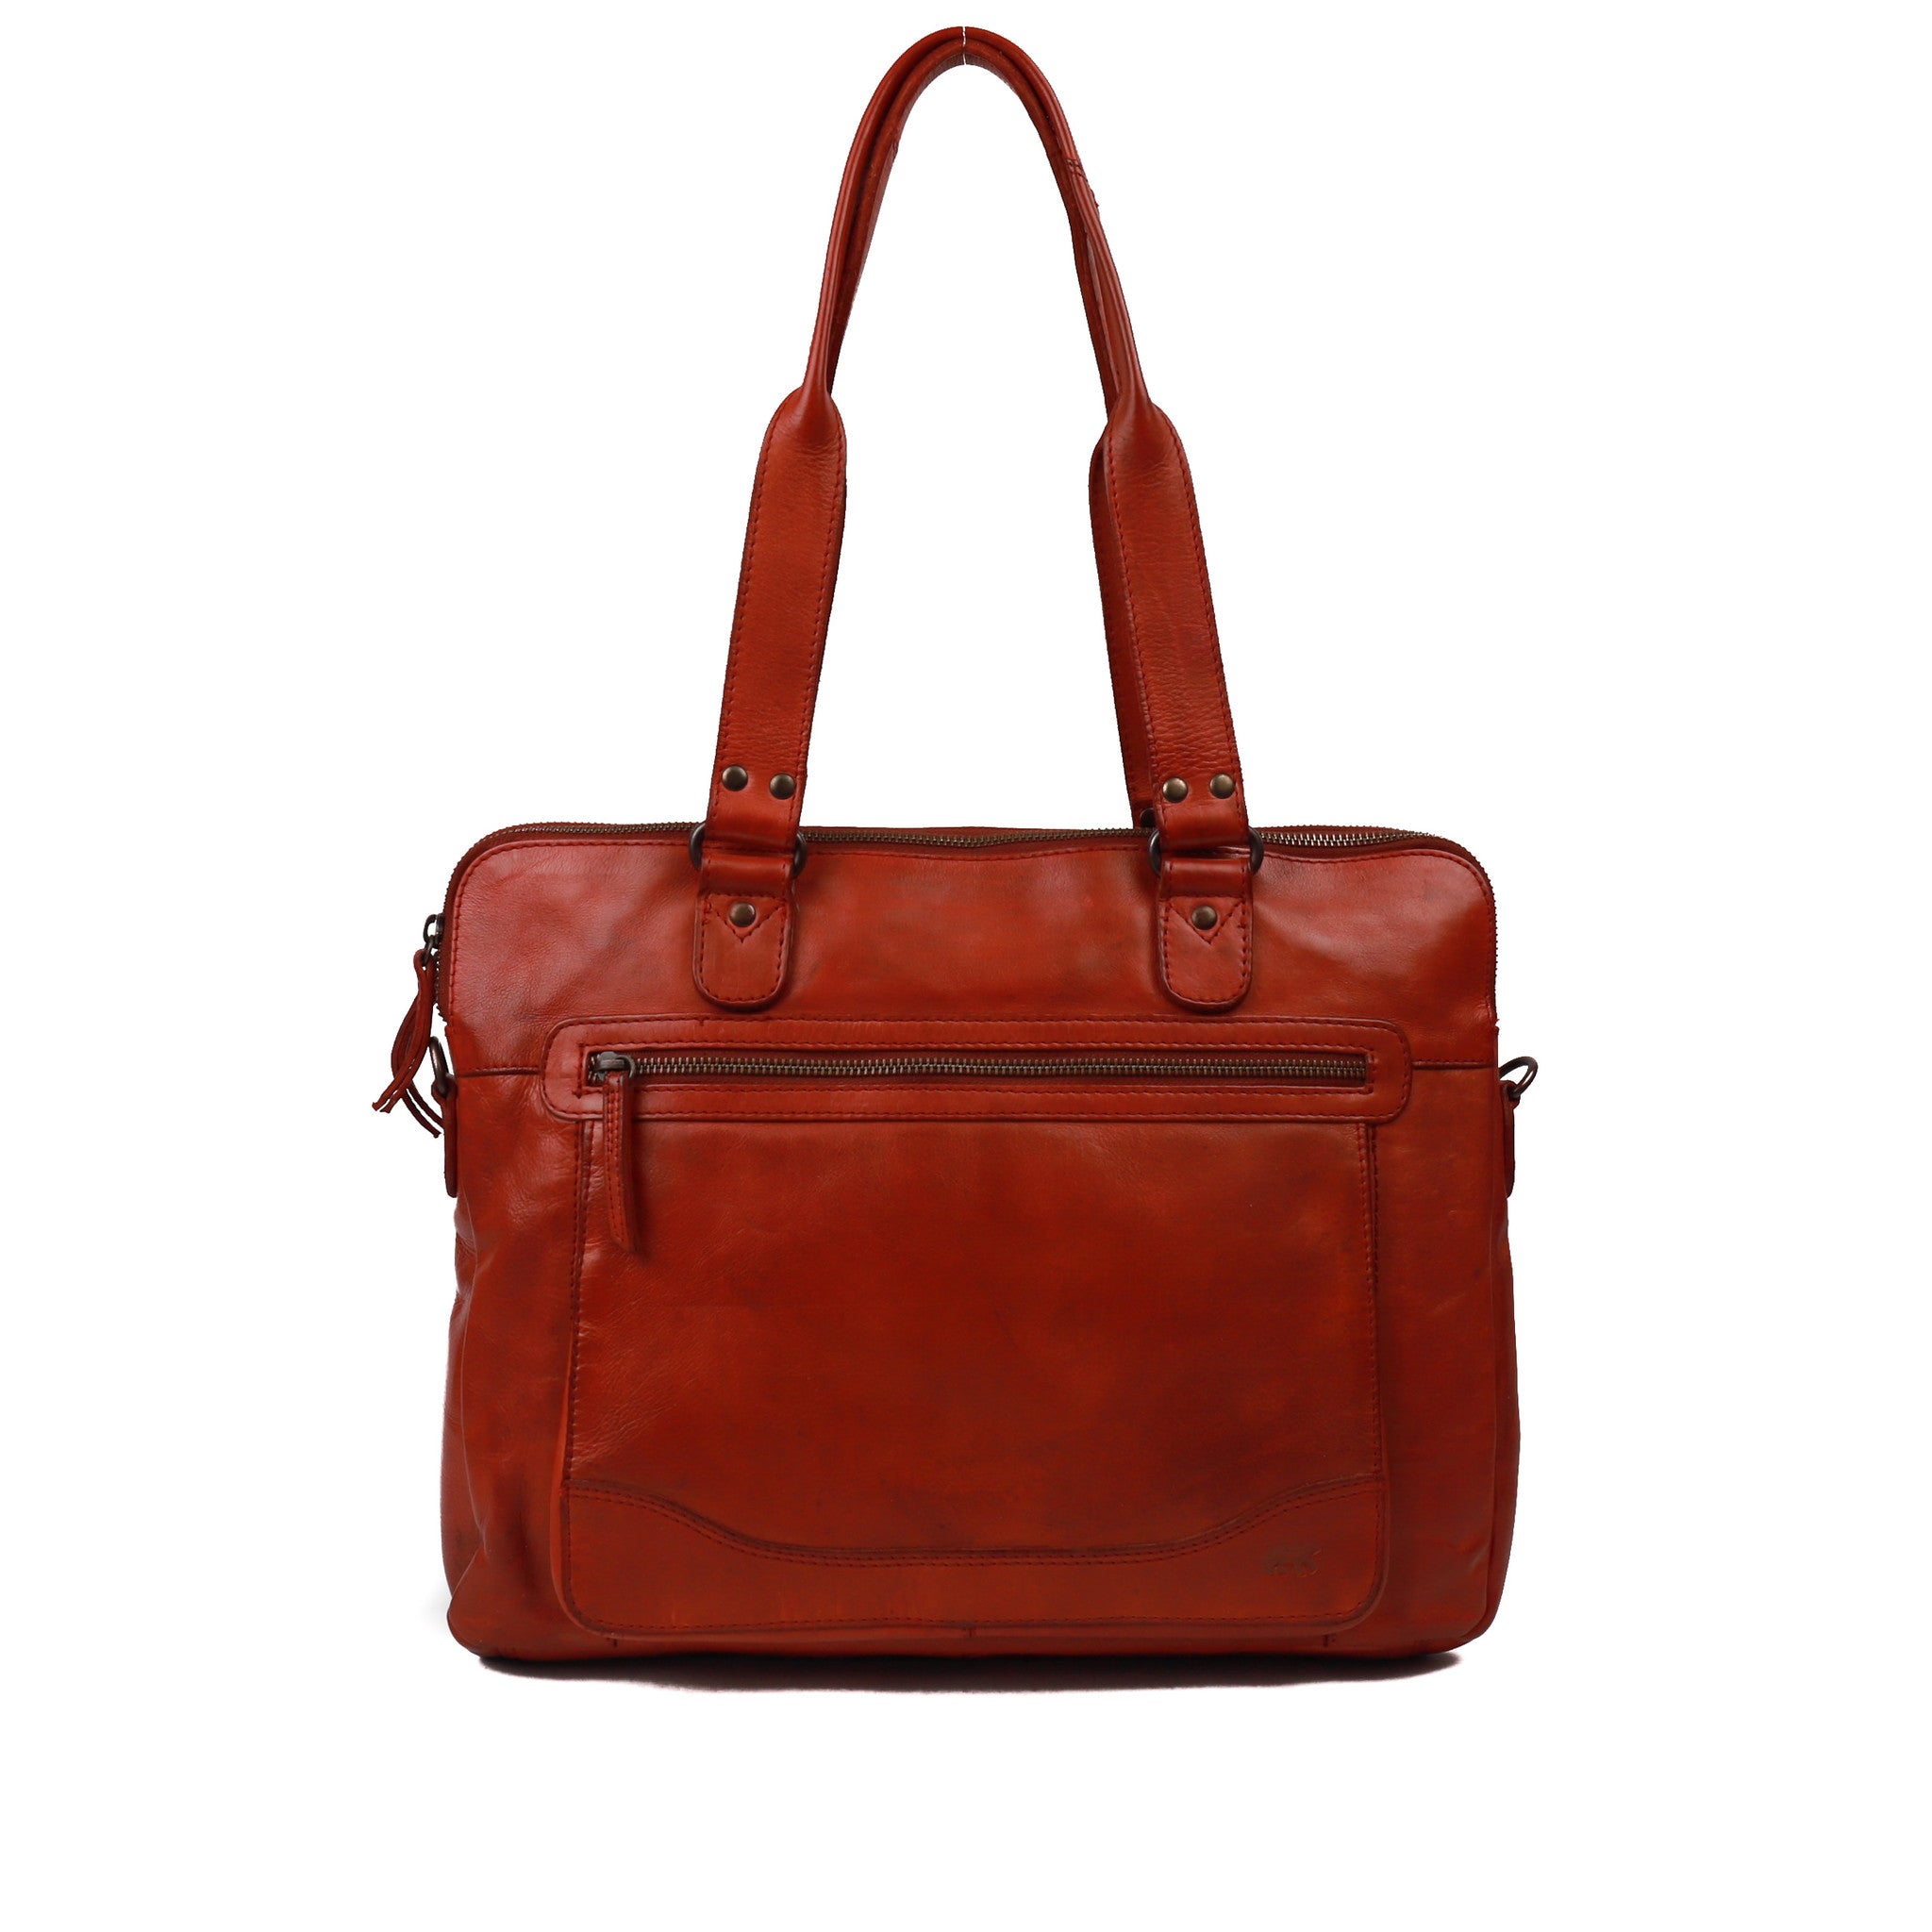 Hand/shoulder bag 'Lia' red - CL 35220